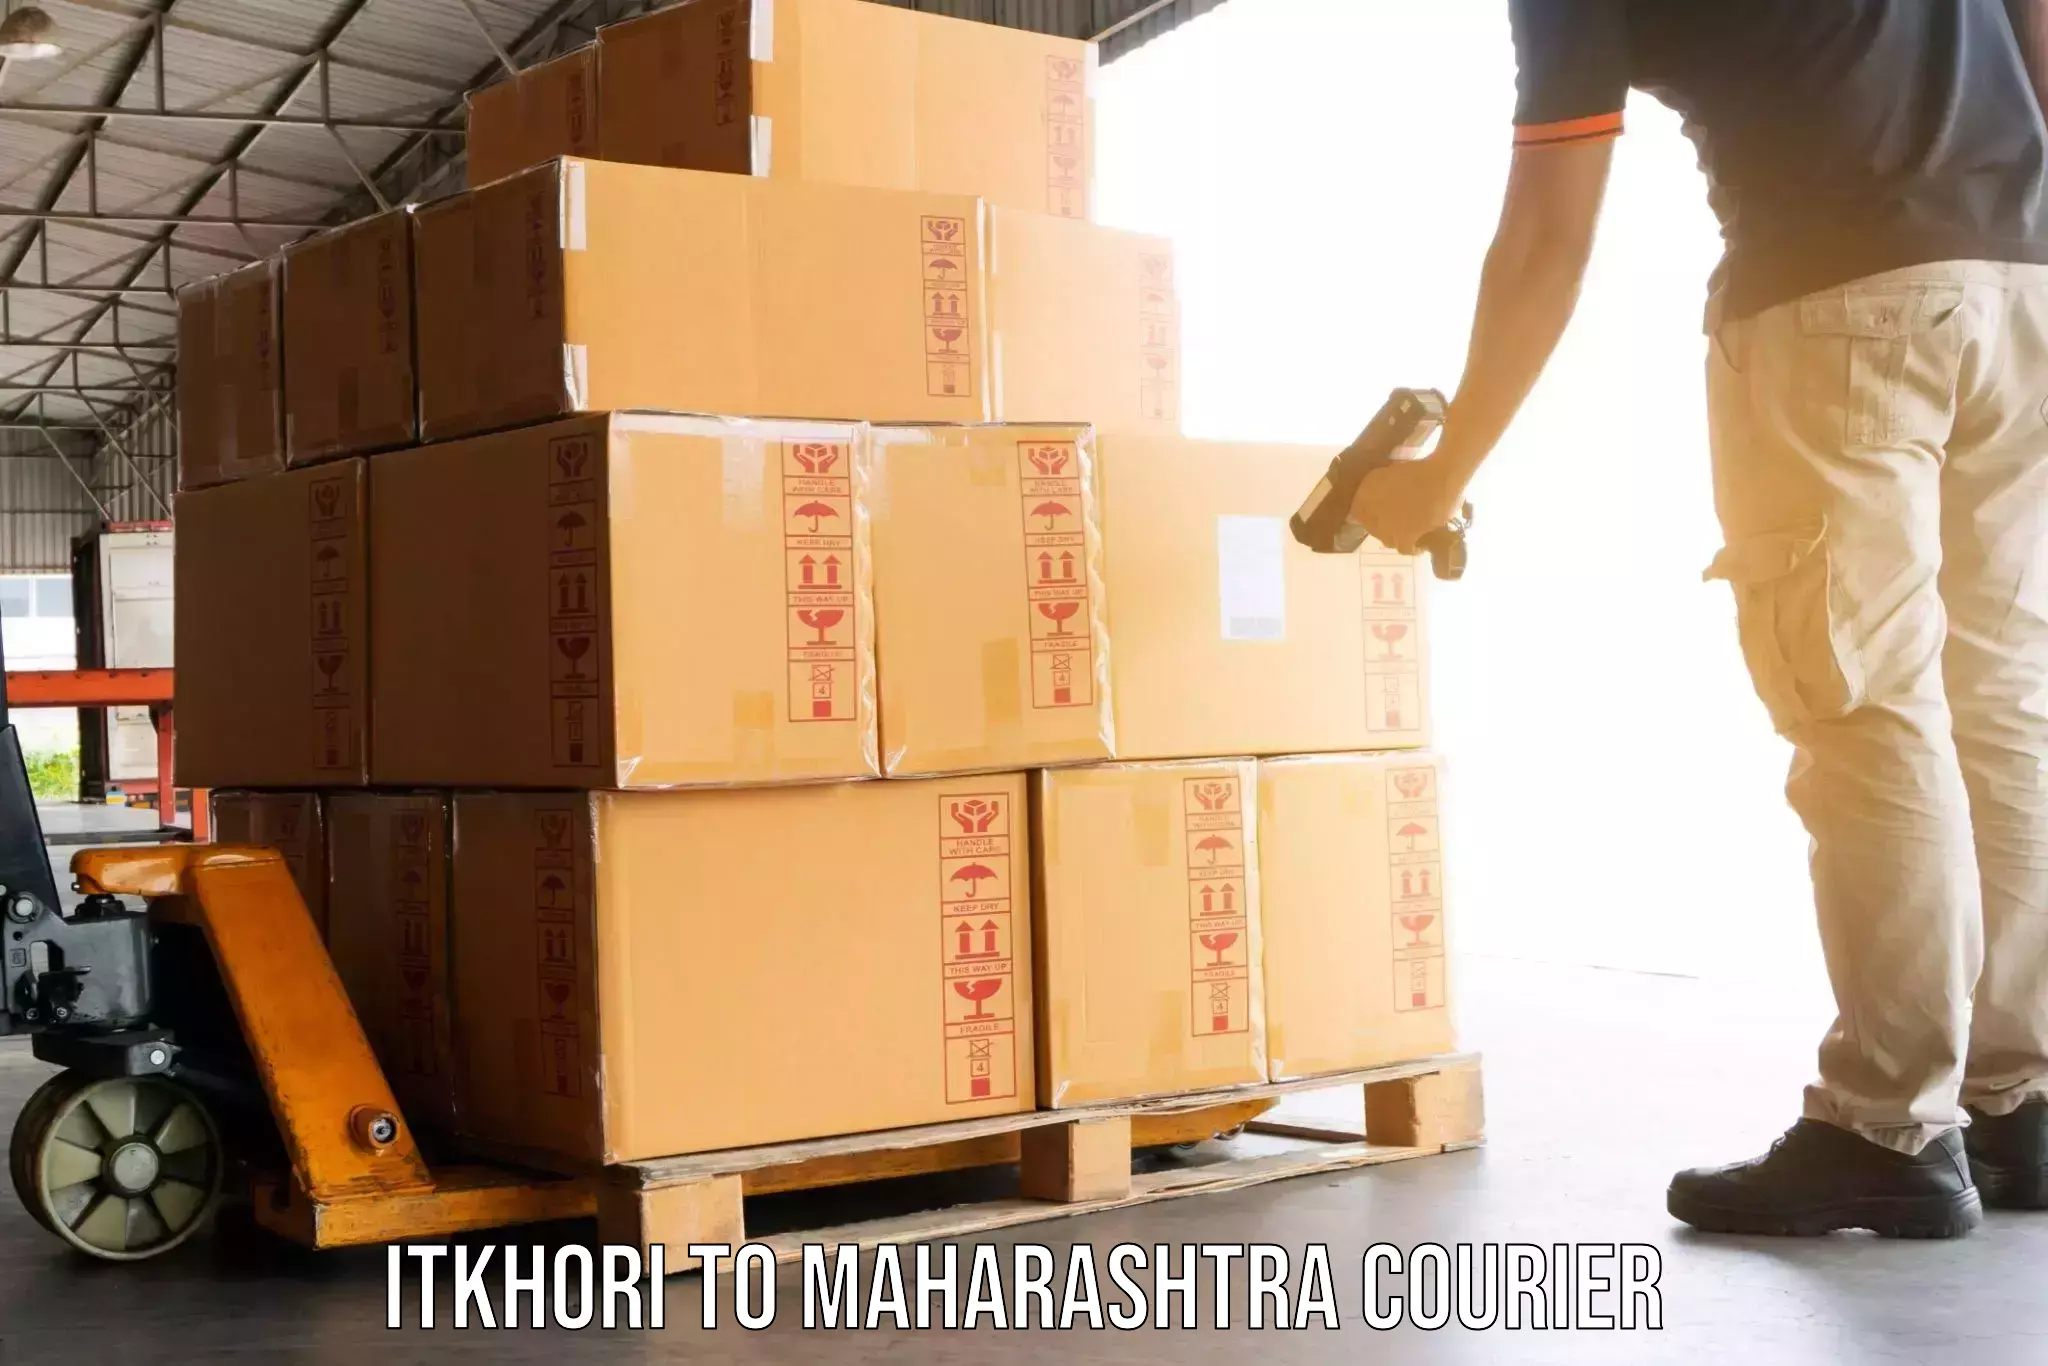 Home shifting experts Itkhori to Maharashtra